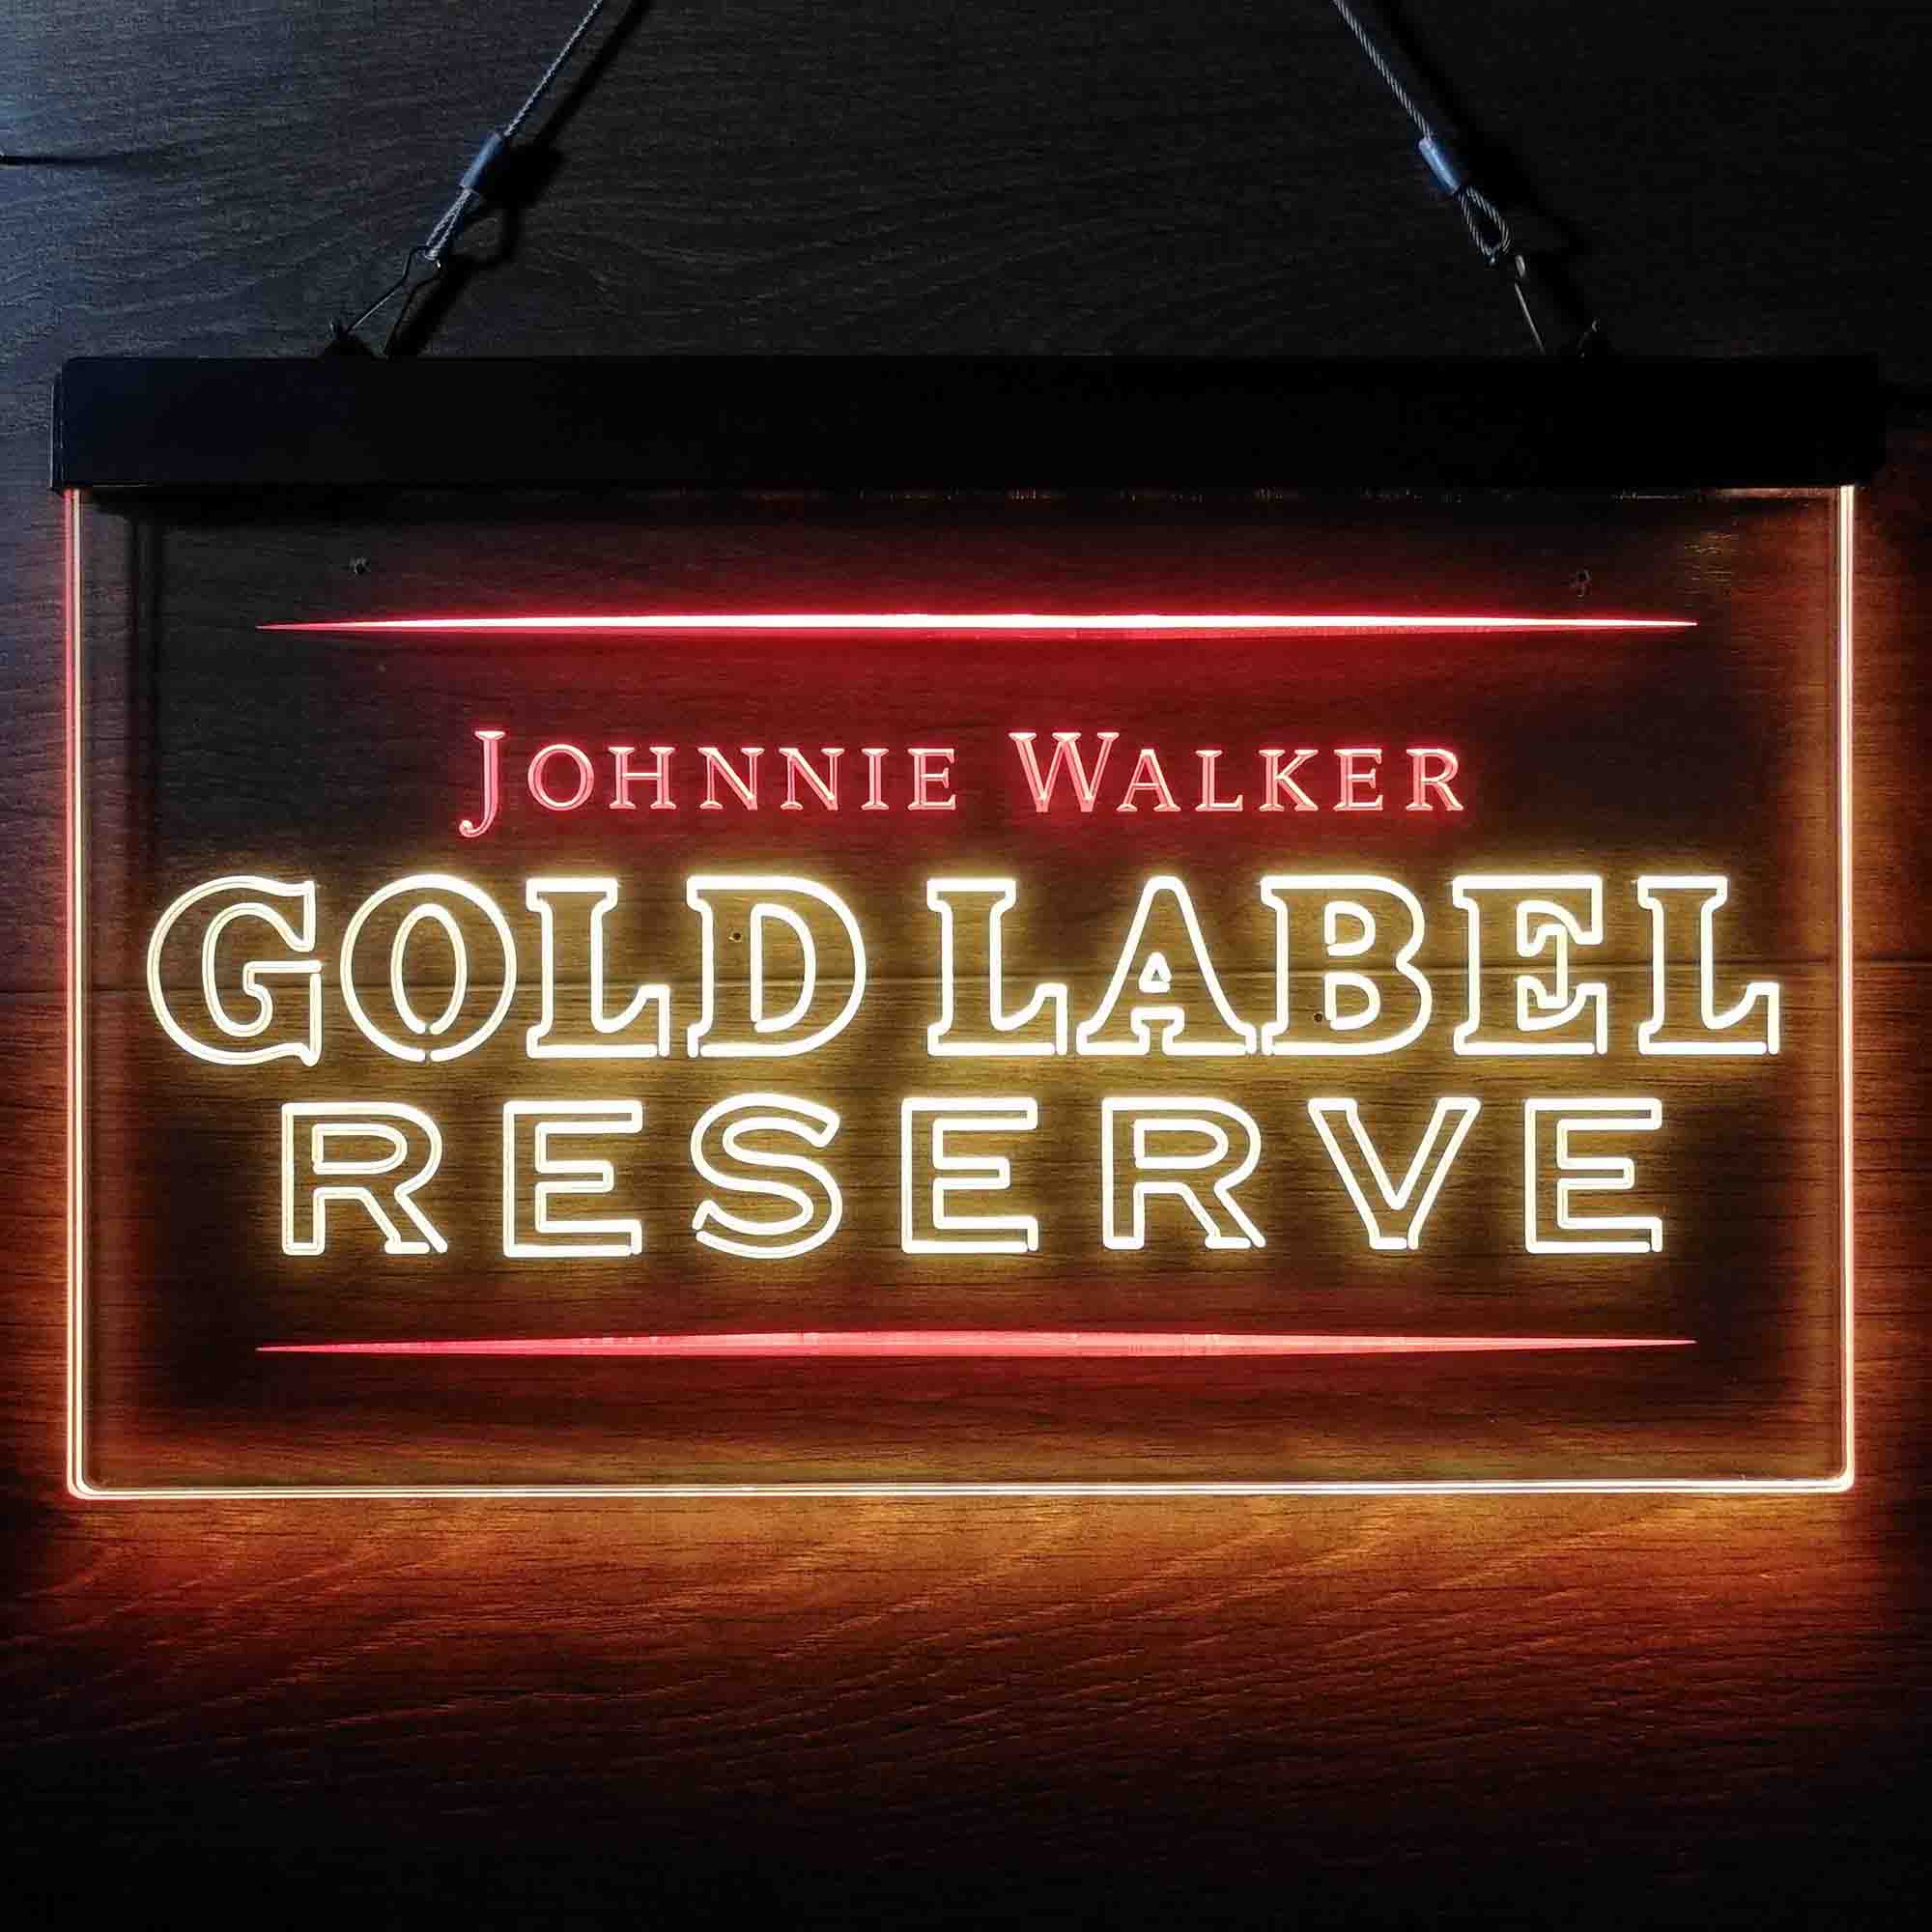 Johnnie Walker Gold Label Reserve Neon LED Sign